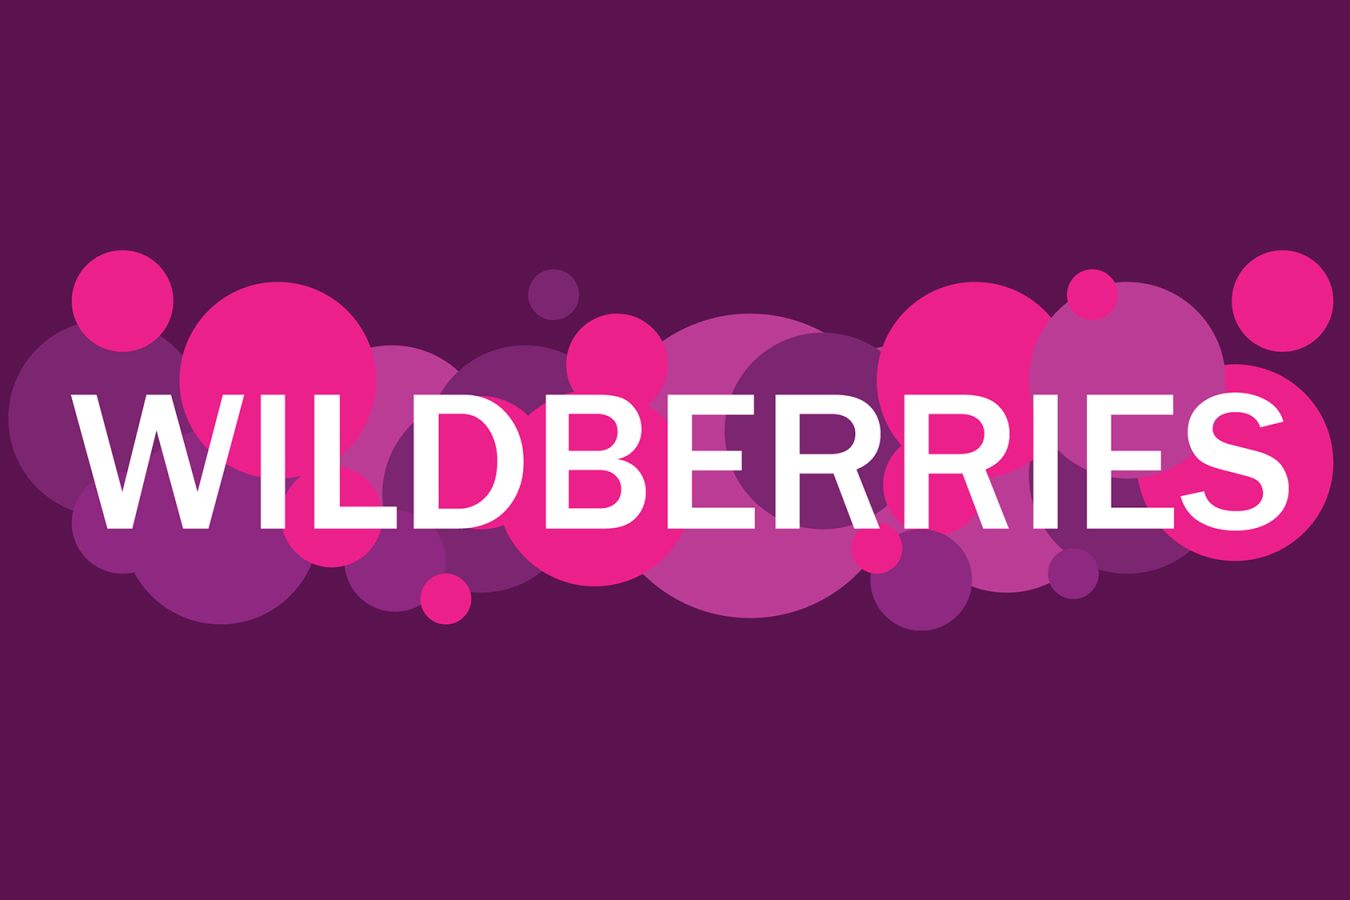 Wildberries запретила продажу всех видов вейпов и курительных смесей с 7 февраля. После того как общественные организации обнаружили, что интернет-площадки активно продают никотинсодержащую продукцию в обход закона  – фото